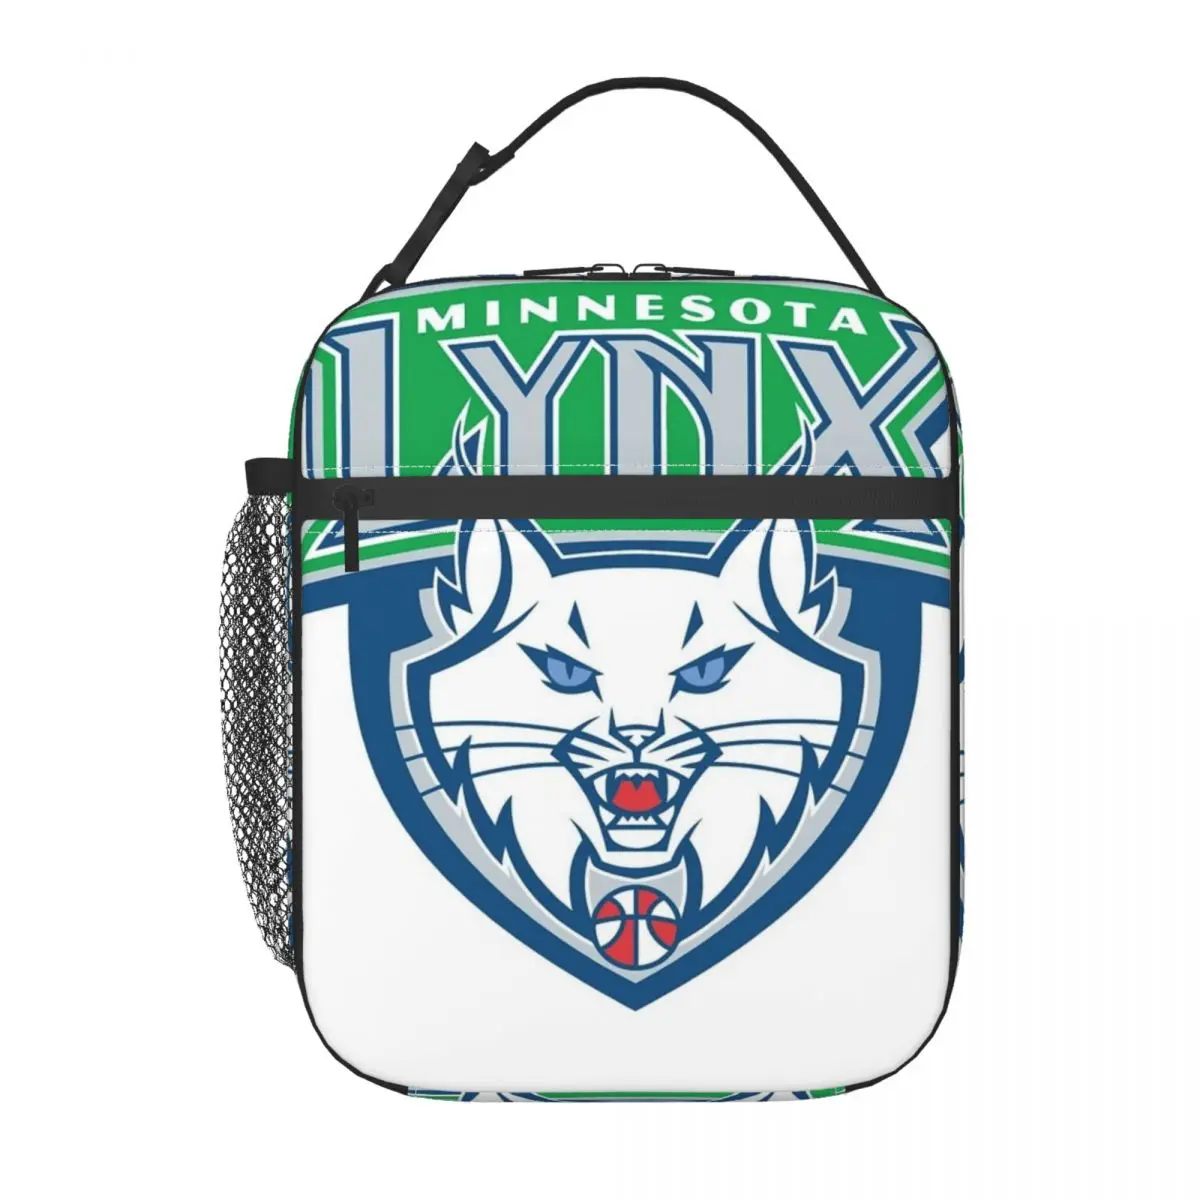 

Сумка для ланча с изоляцией Minnesota Lynx, современная ткань Оксфорд, Офисная изолированная сумка для ланча, разные стили